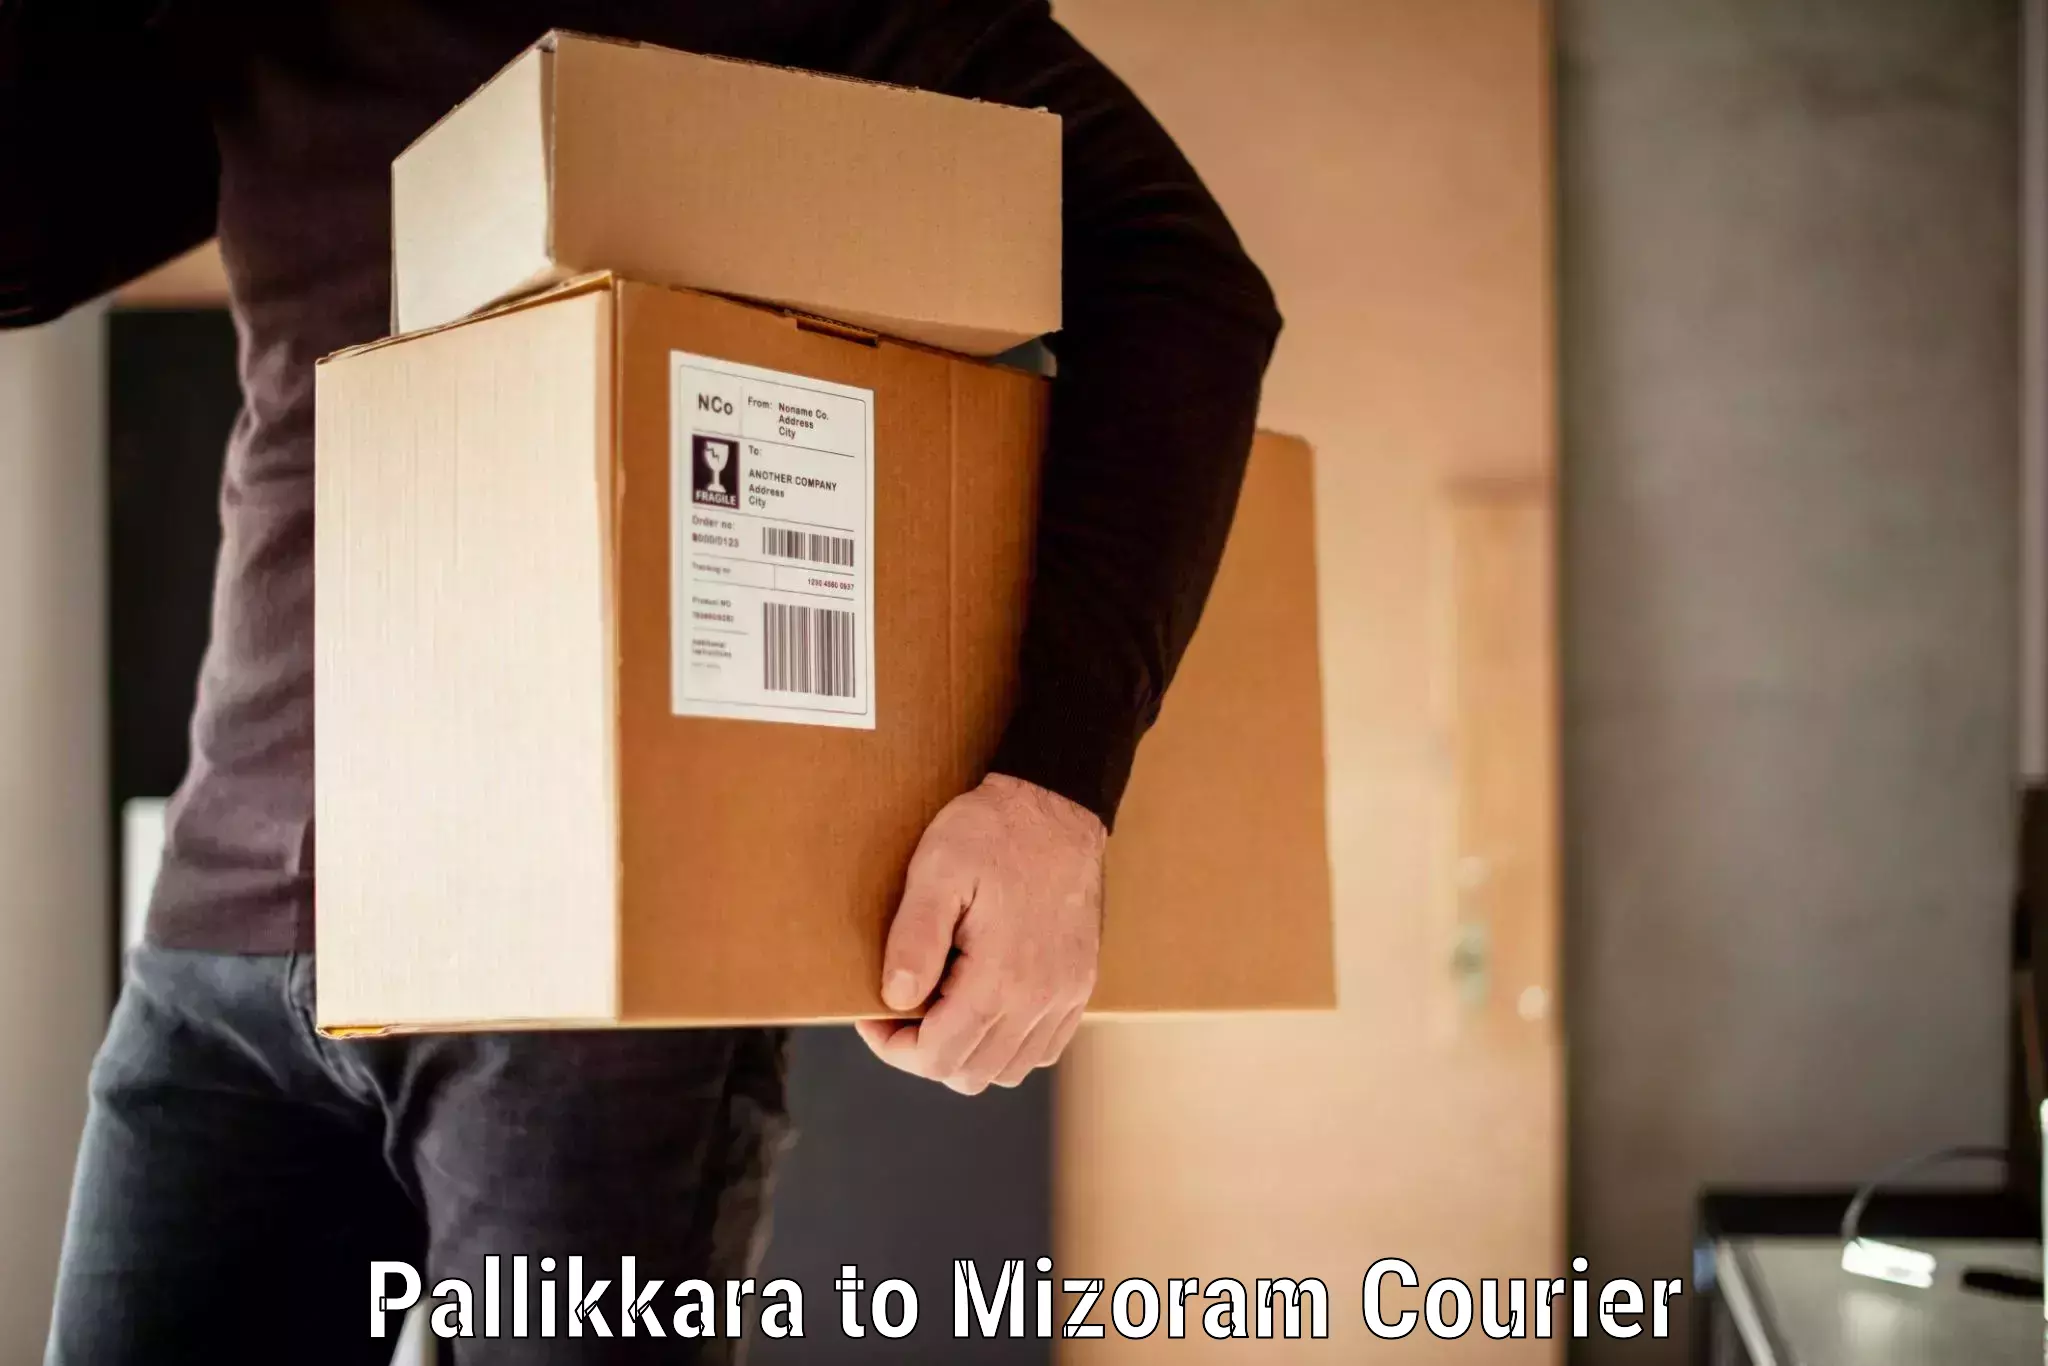 Baggage handling services Pallikkara to Mizoram